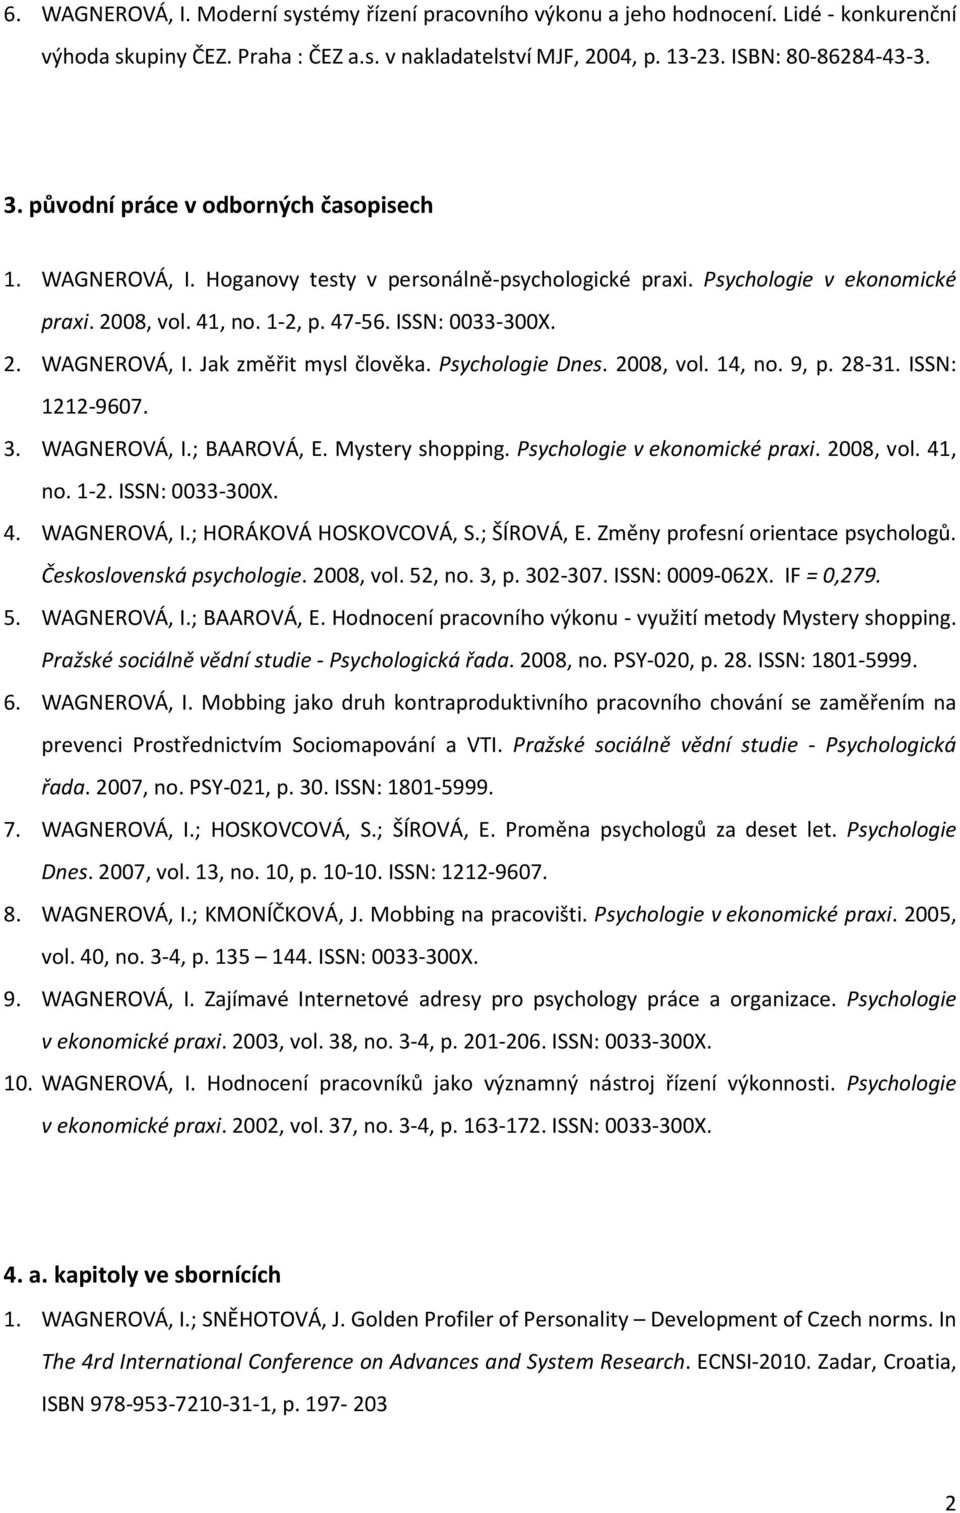 Psychologie Dnes. 2008, vol. 14, no. 9, p. 28-31. ISSN: 1212-9607. 3. WAGNEROVÁ, I.; BAAROVÁ, E. Mystery shopping. Psychologie v ekonomické praxi. 2008, vol. 41, no. 1-2. ISSN: 0033-300X. 4. WAGNEROVÁ, I.; HORÁKOVÁ HOSKOVCOVÁ, S.